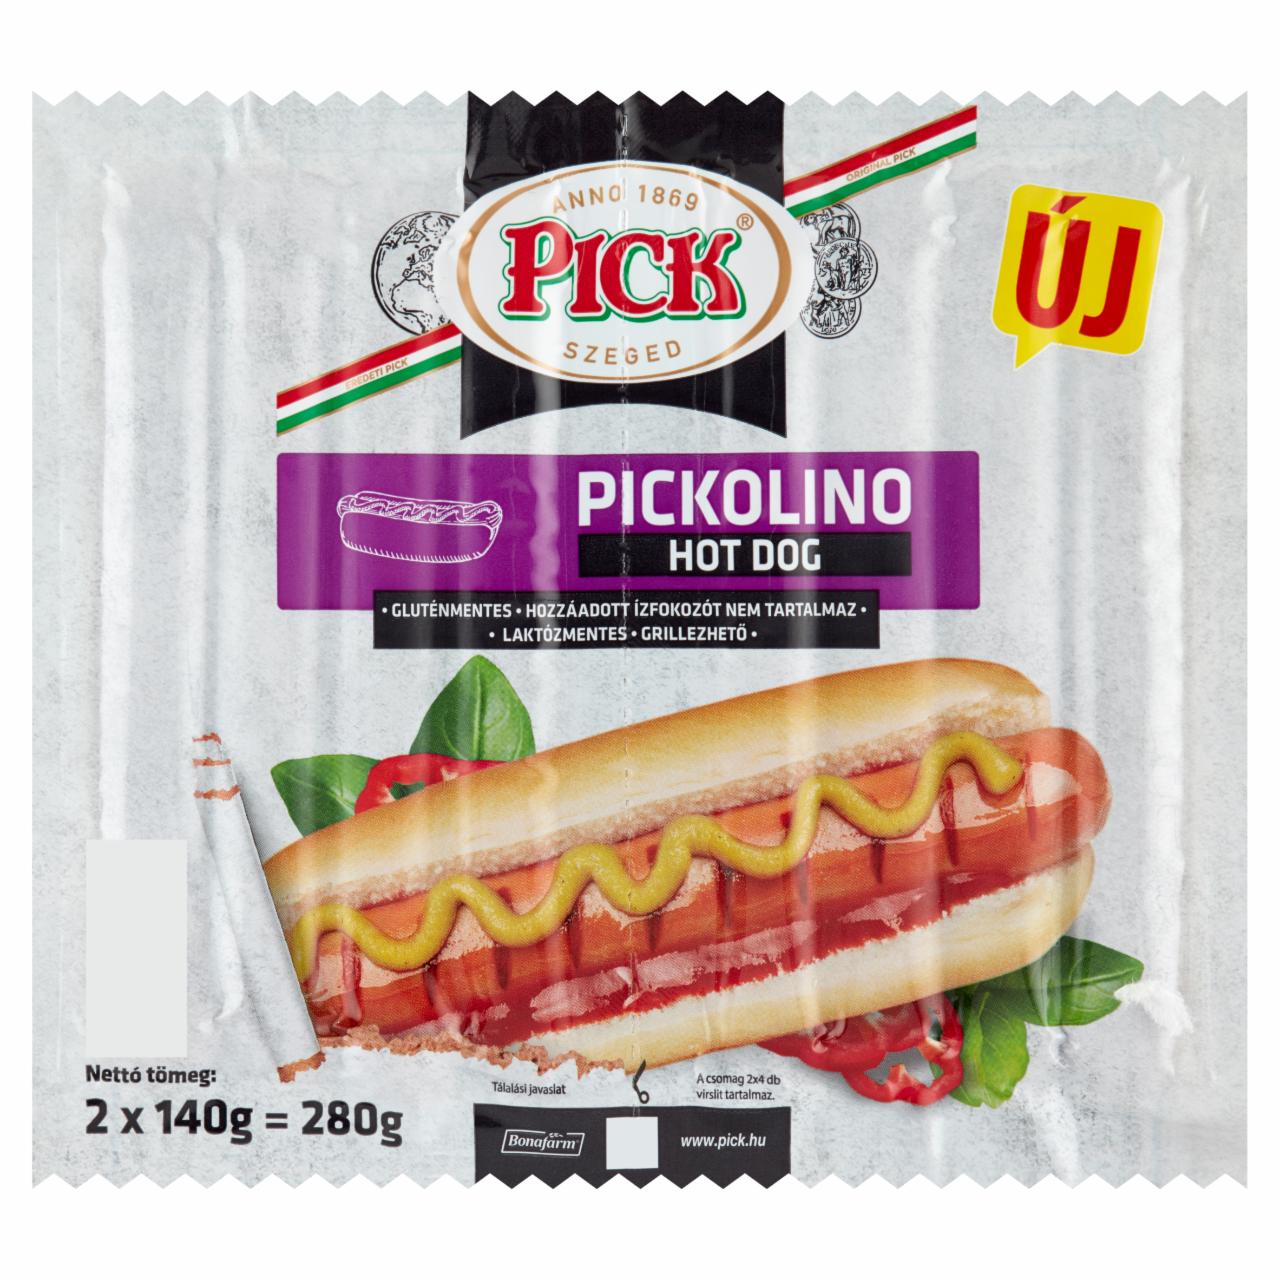 Képek - Pick Pickolino hot dog 2 x 140 g (280 g)